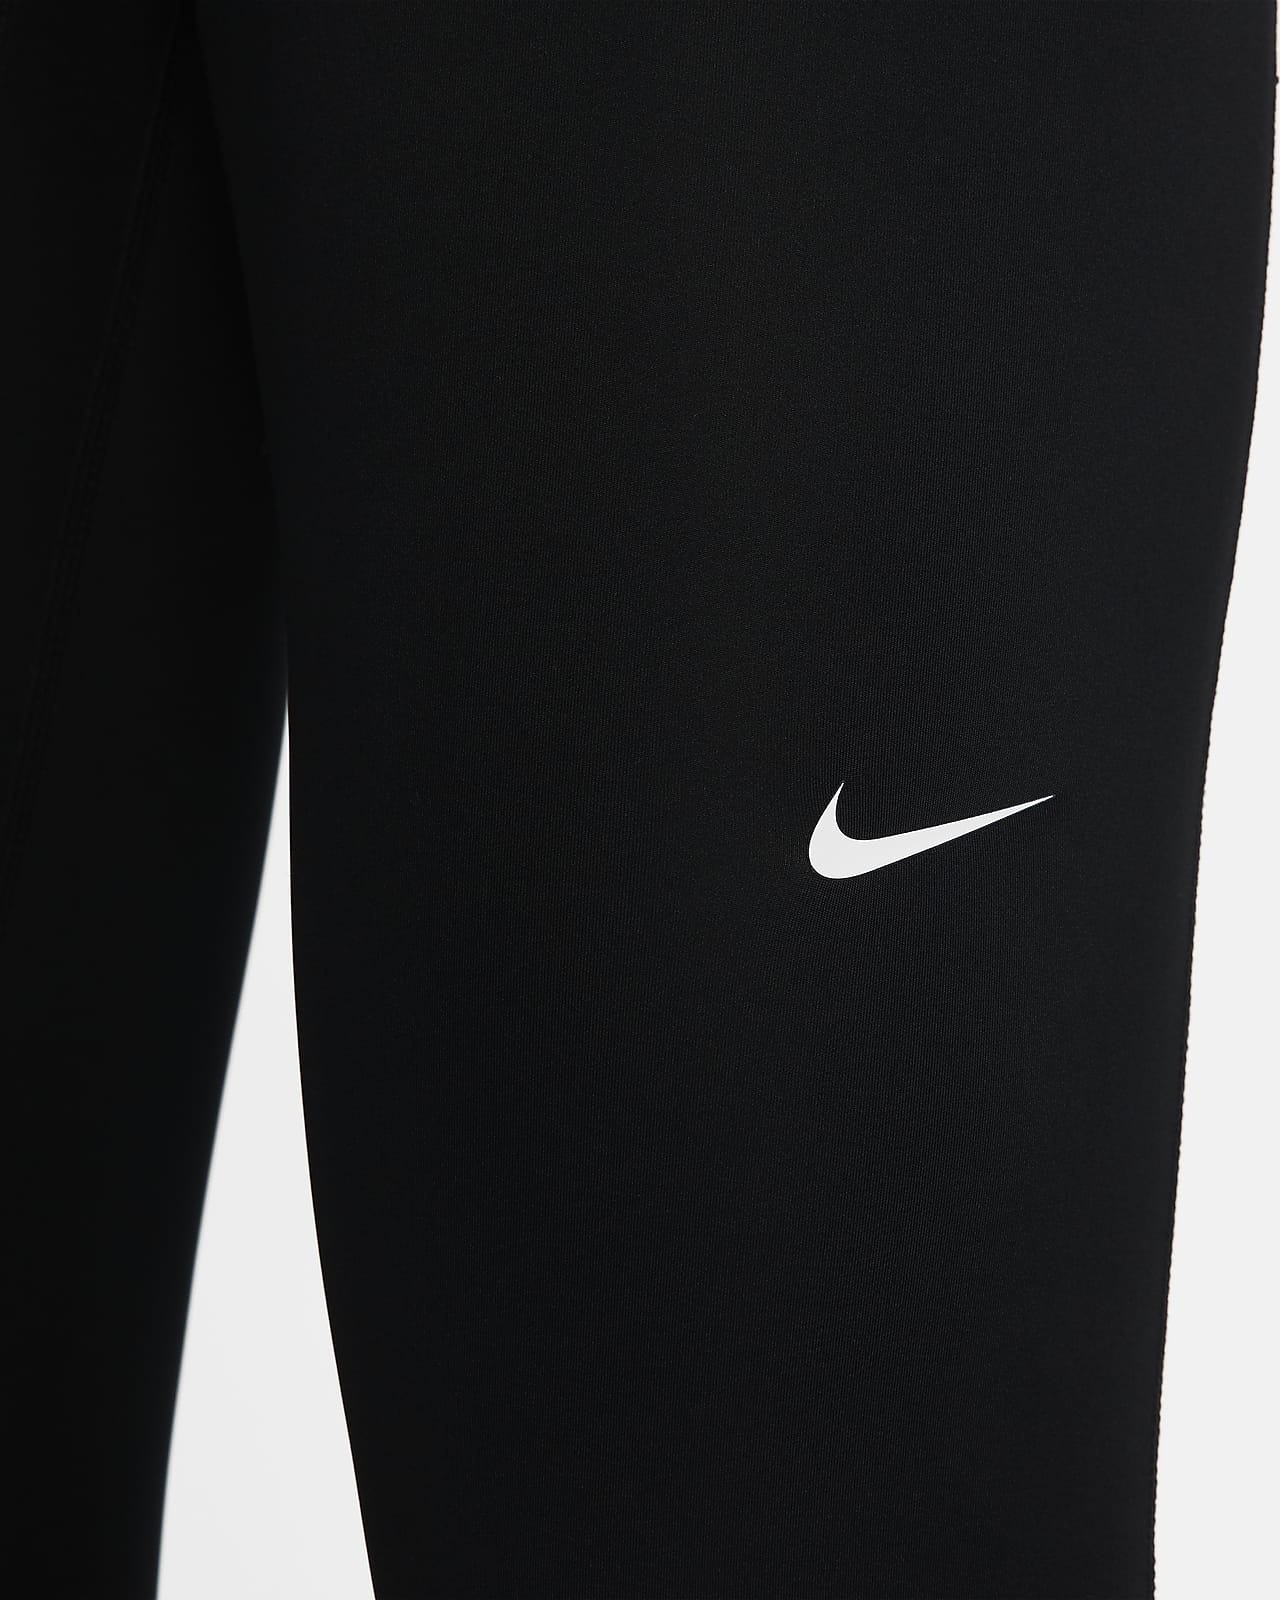 Nike Tights Pro 365 7/8 - Schwarz/Weiß Damen